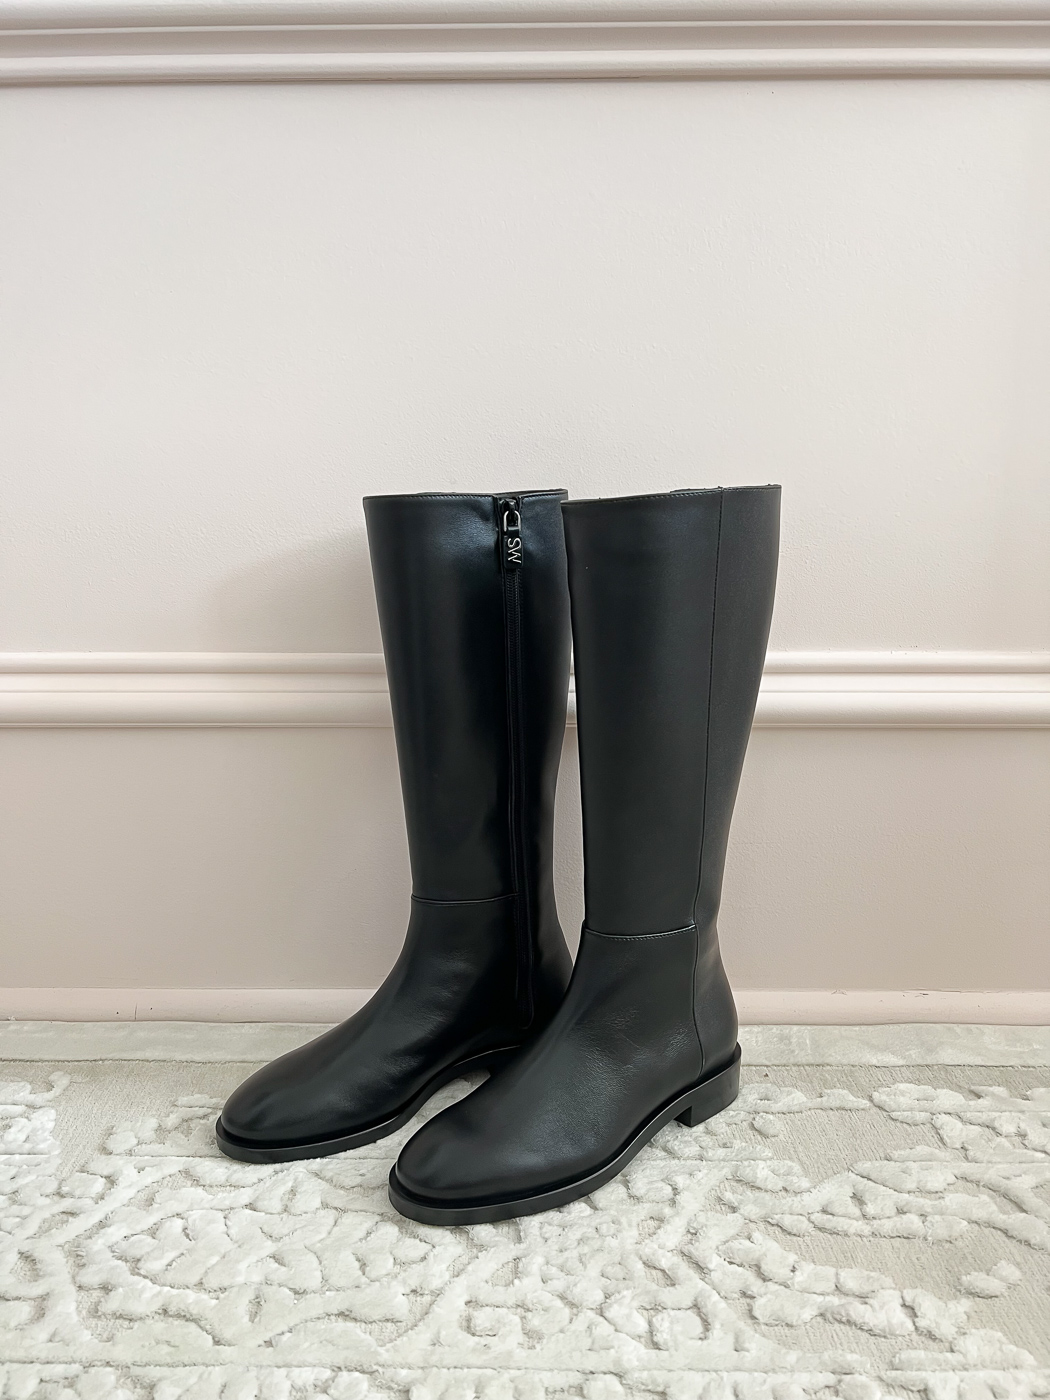 Petite Friendly Black Leather Flat Boots - Stylish Petite